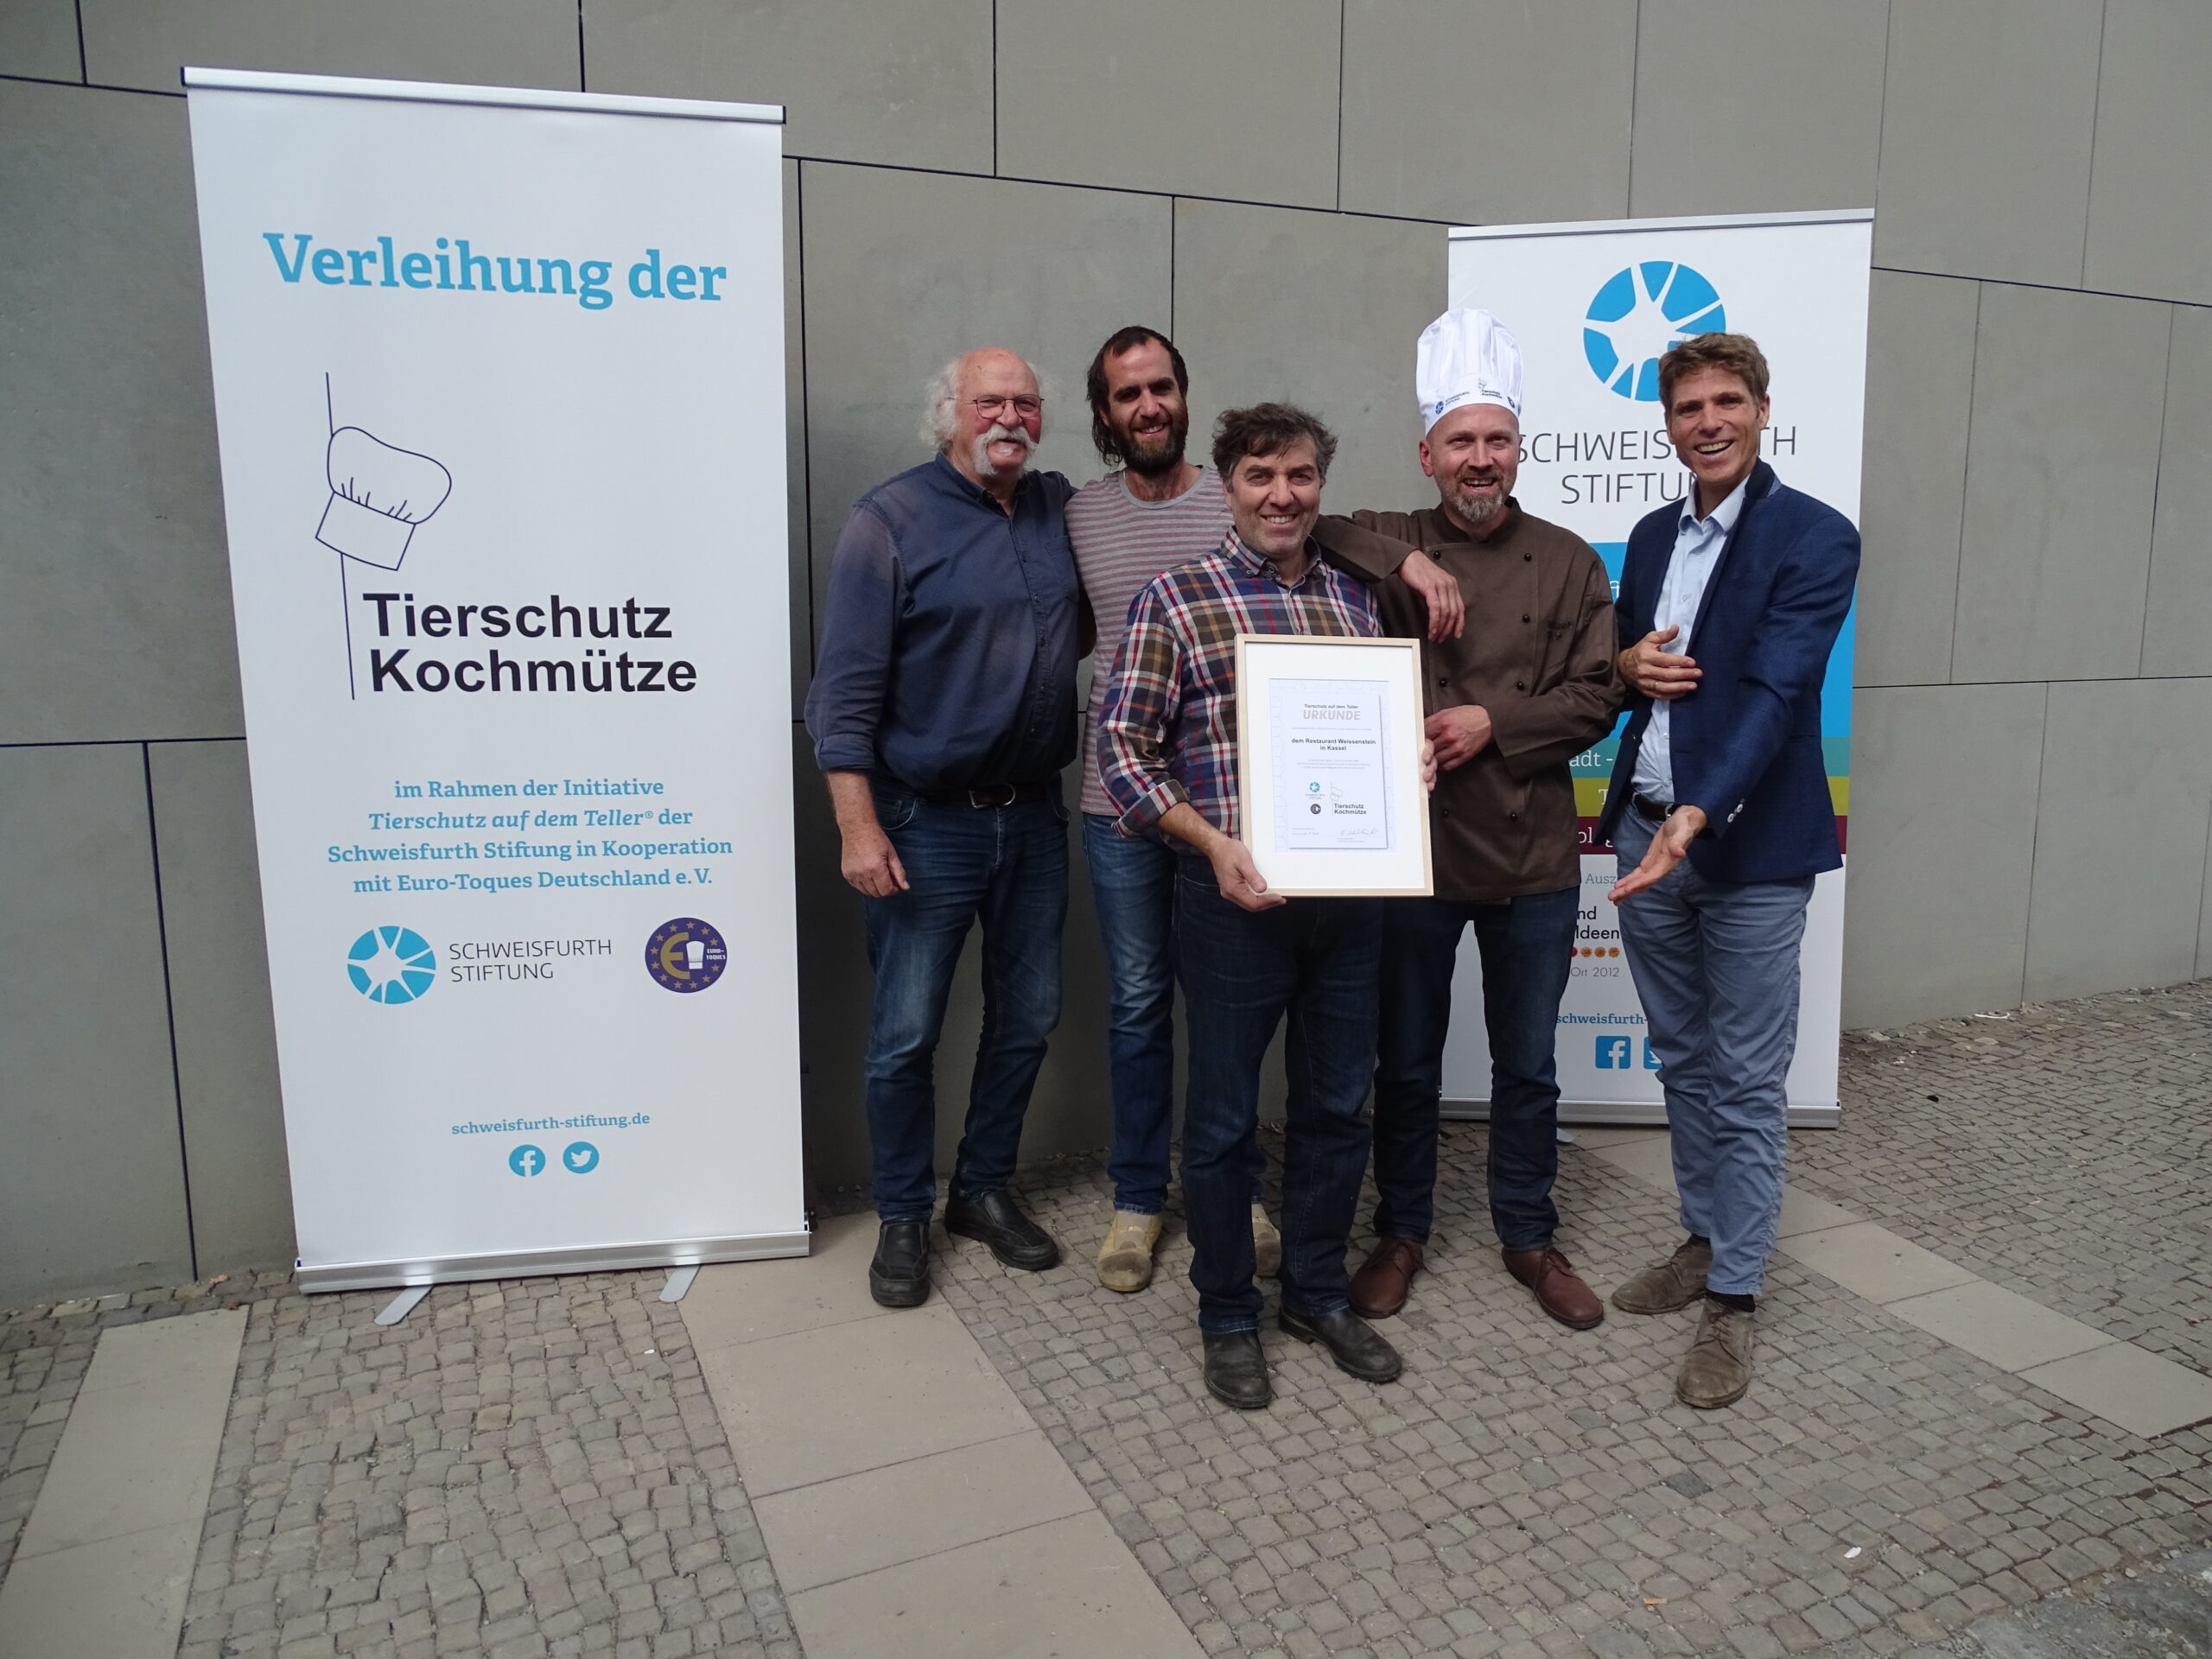 202209_Verleihung Tierschutz Kochmütze (c) Schweisfurth Stiftung.jpg